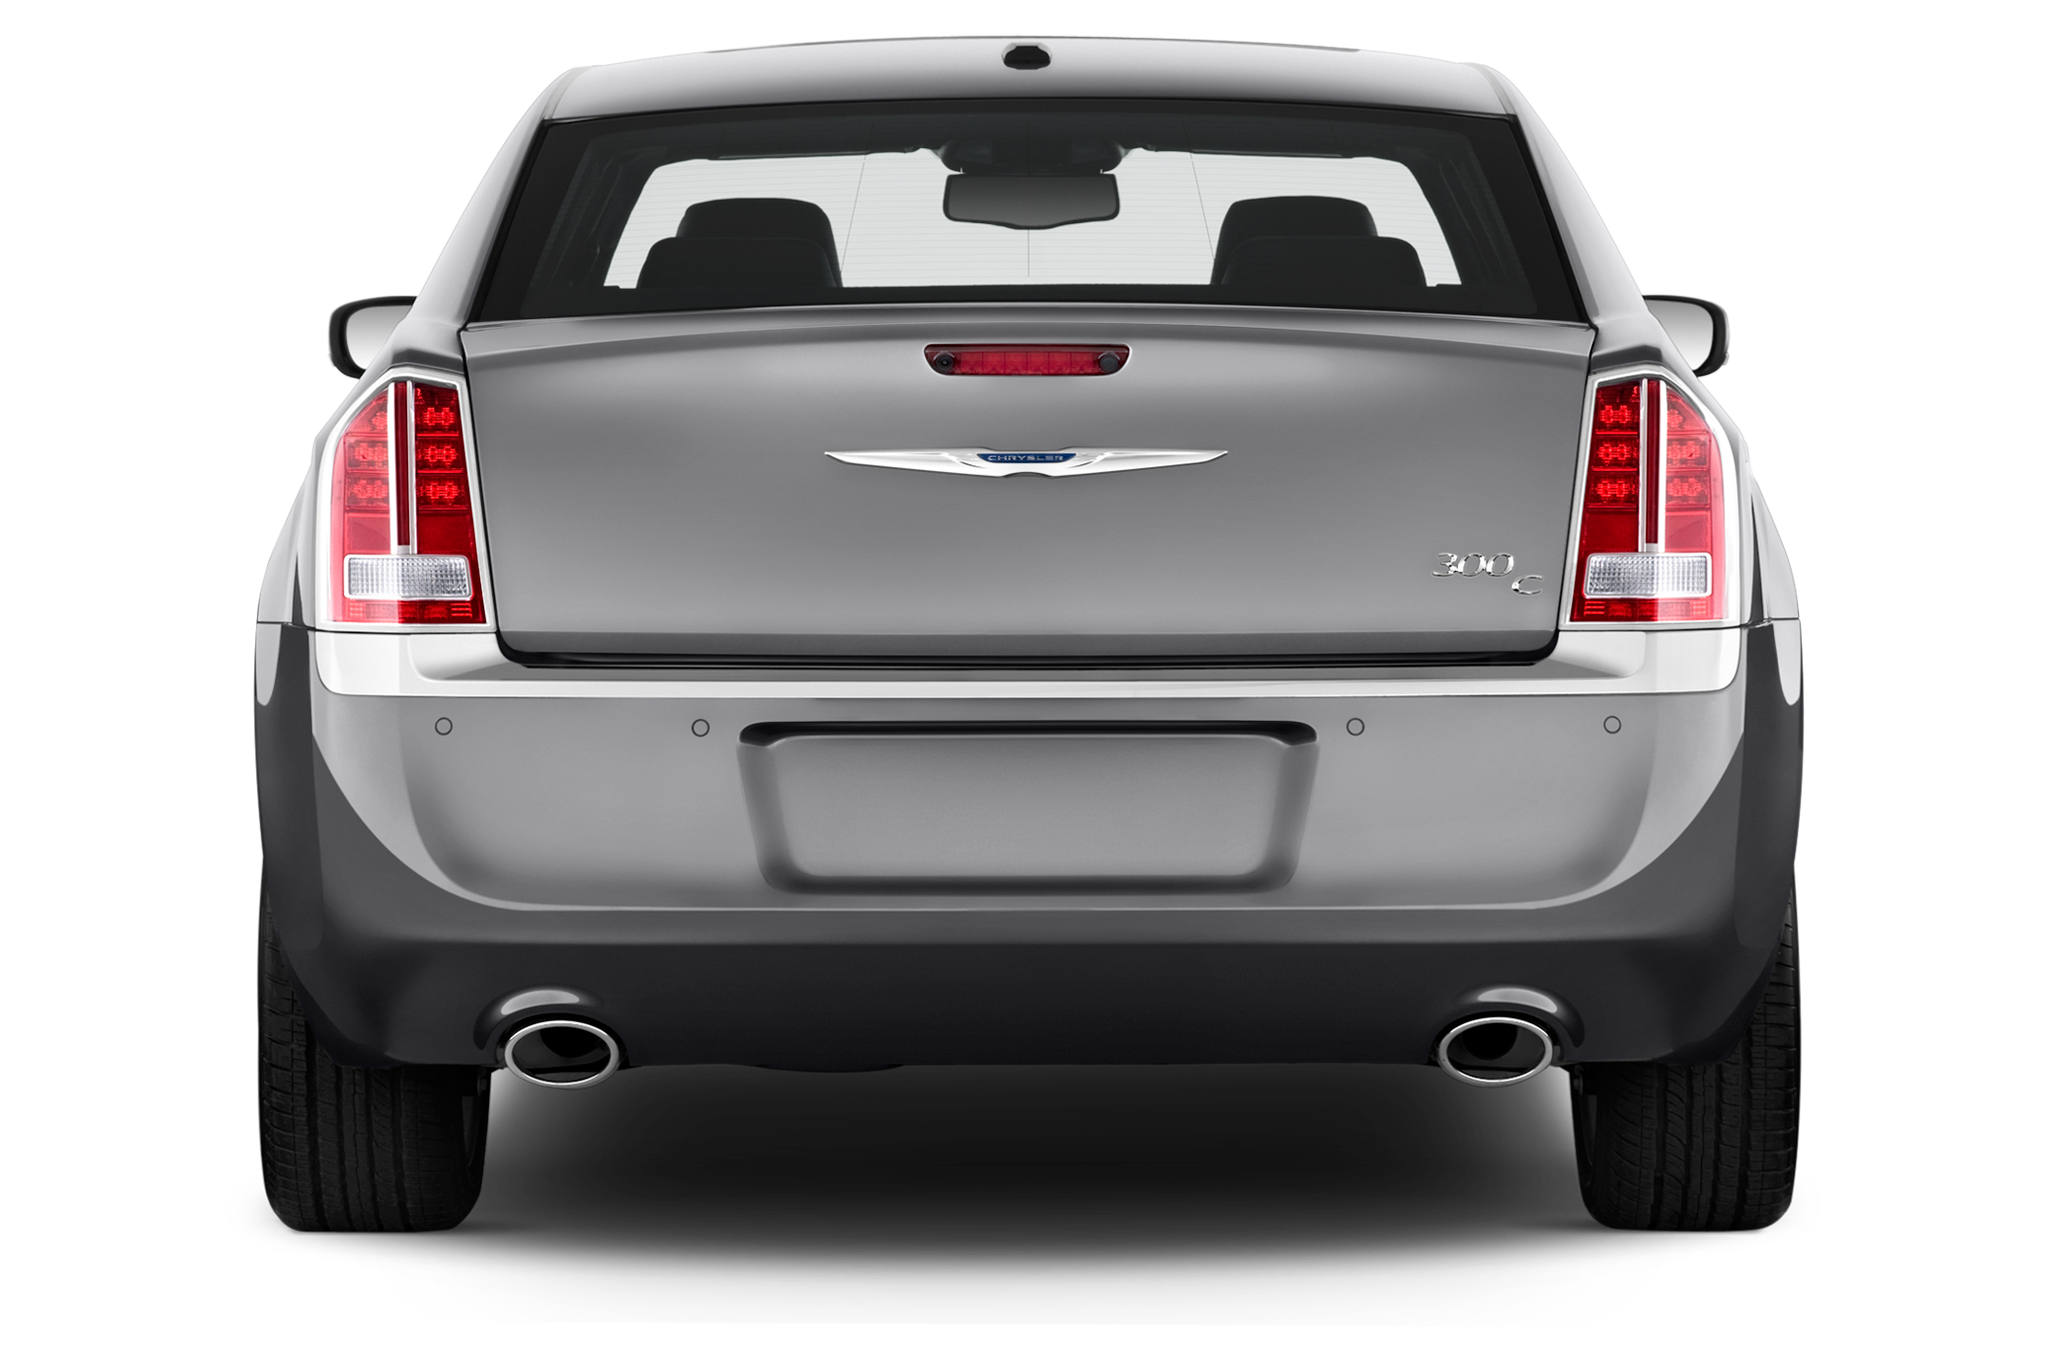 Chrysler 300 C V6 2014 International Price & Overview